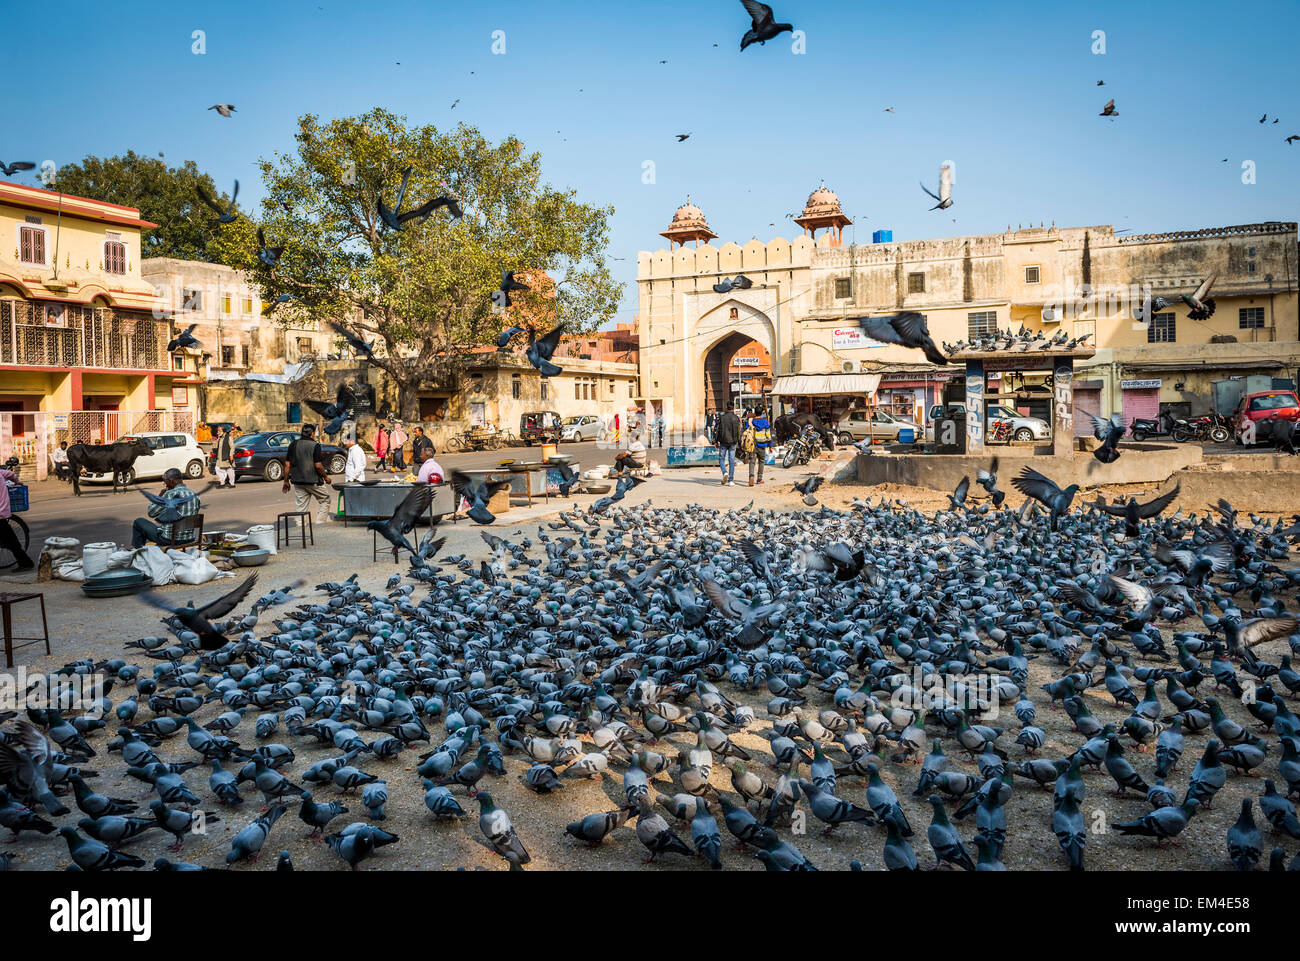 La Plaza de la ciudad de Jaipur, Rajasthan donde la gente viene a hacer ofrendas a las palomas locales para la buena suerte. Foto de stock